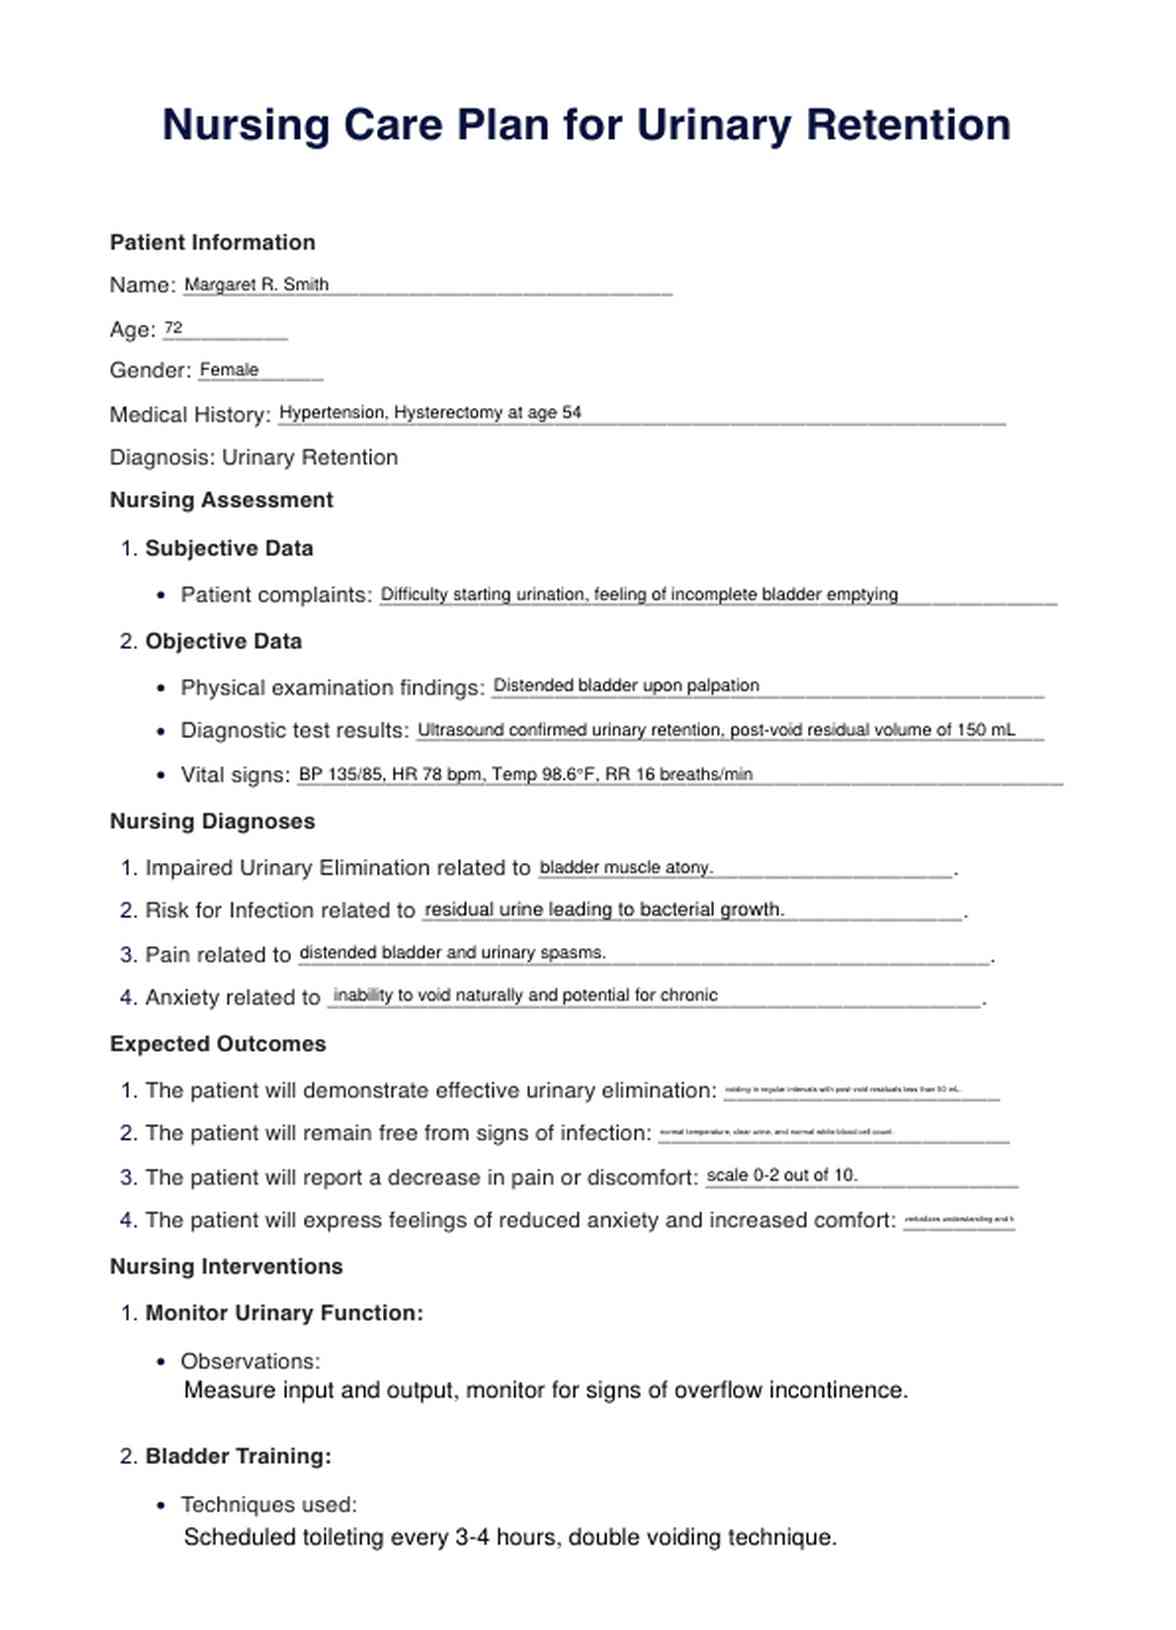  Urinary Retention Nursing Care Plan PDF Example